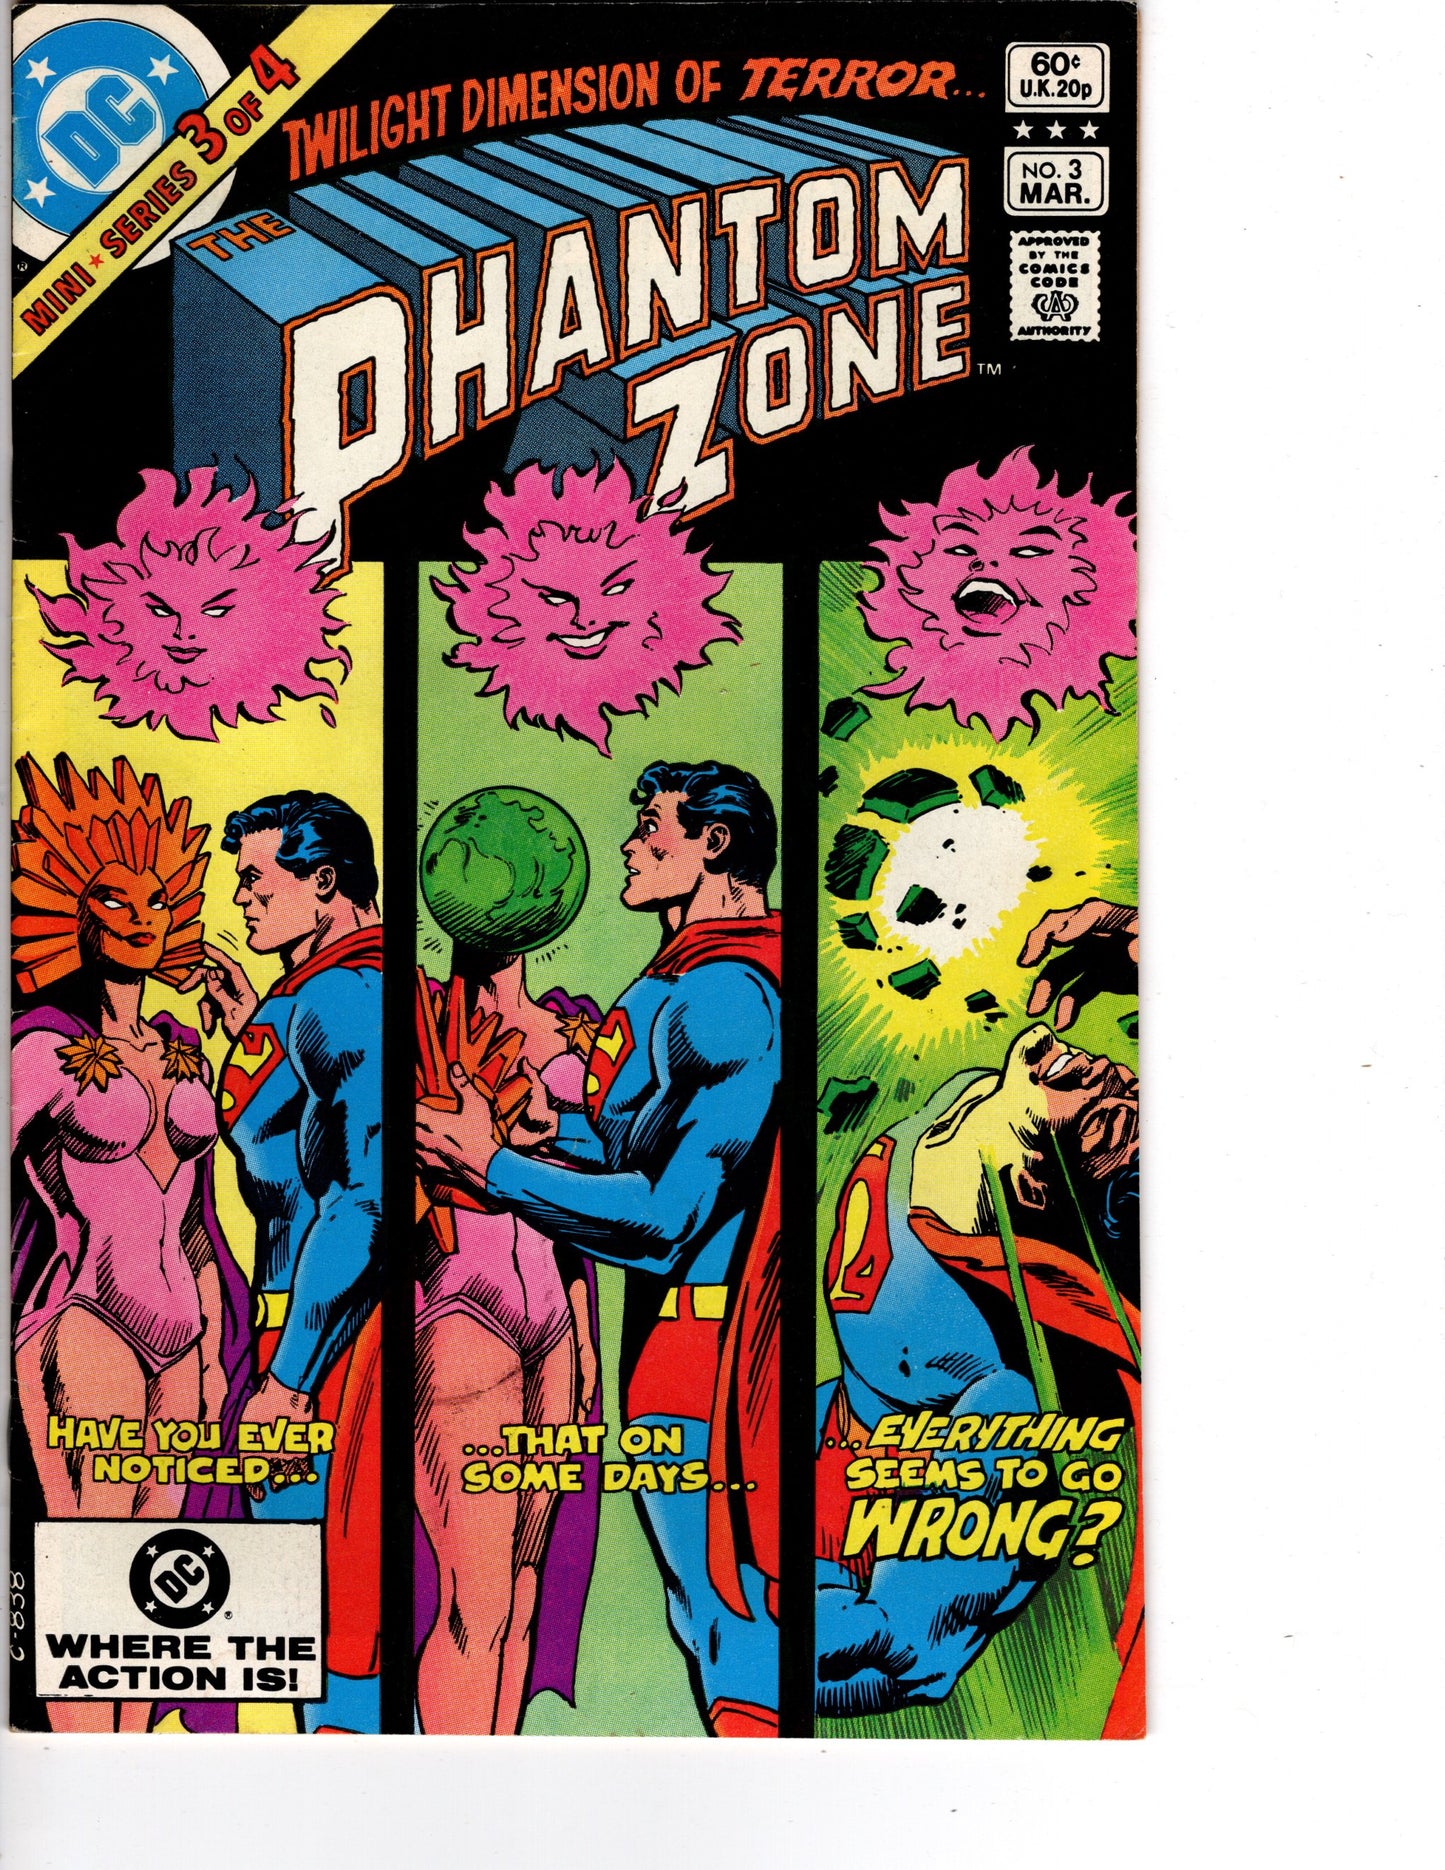 The Phantom Zone #3